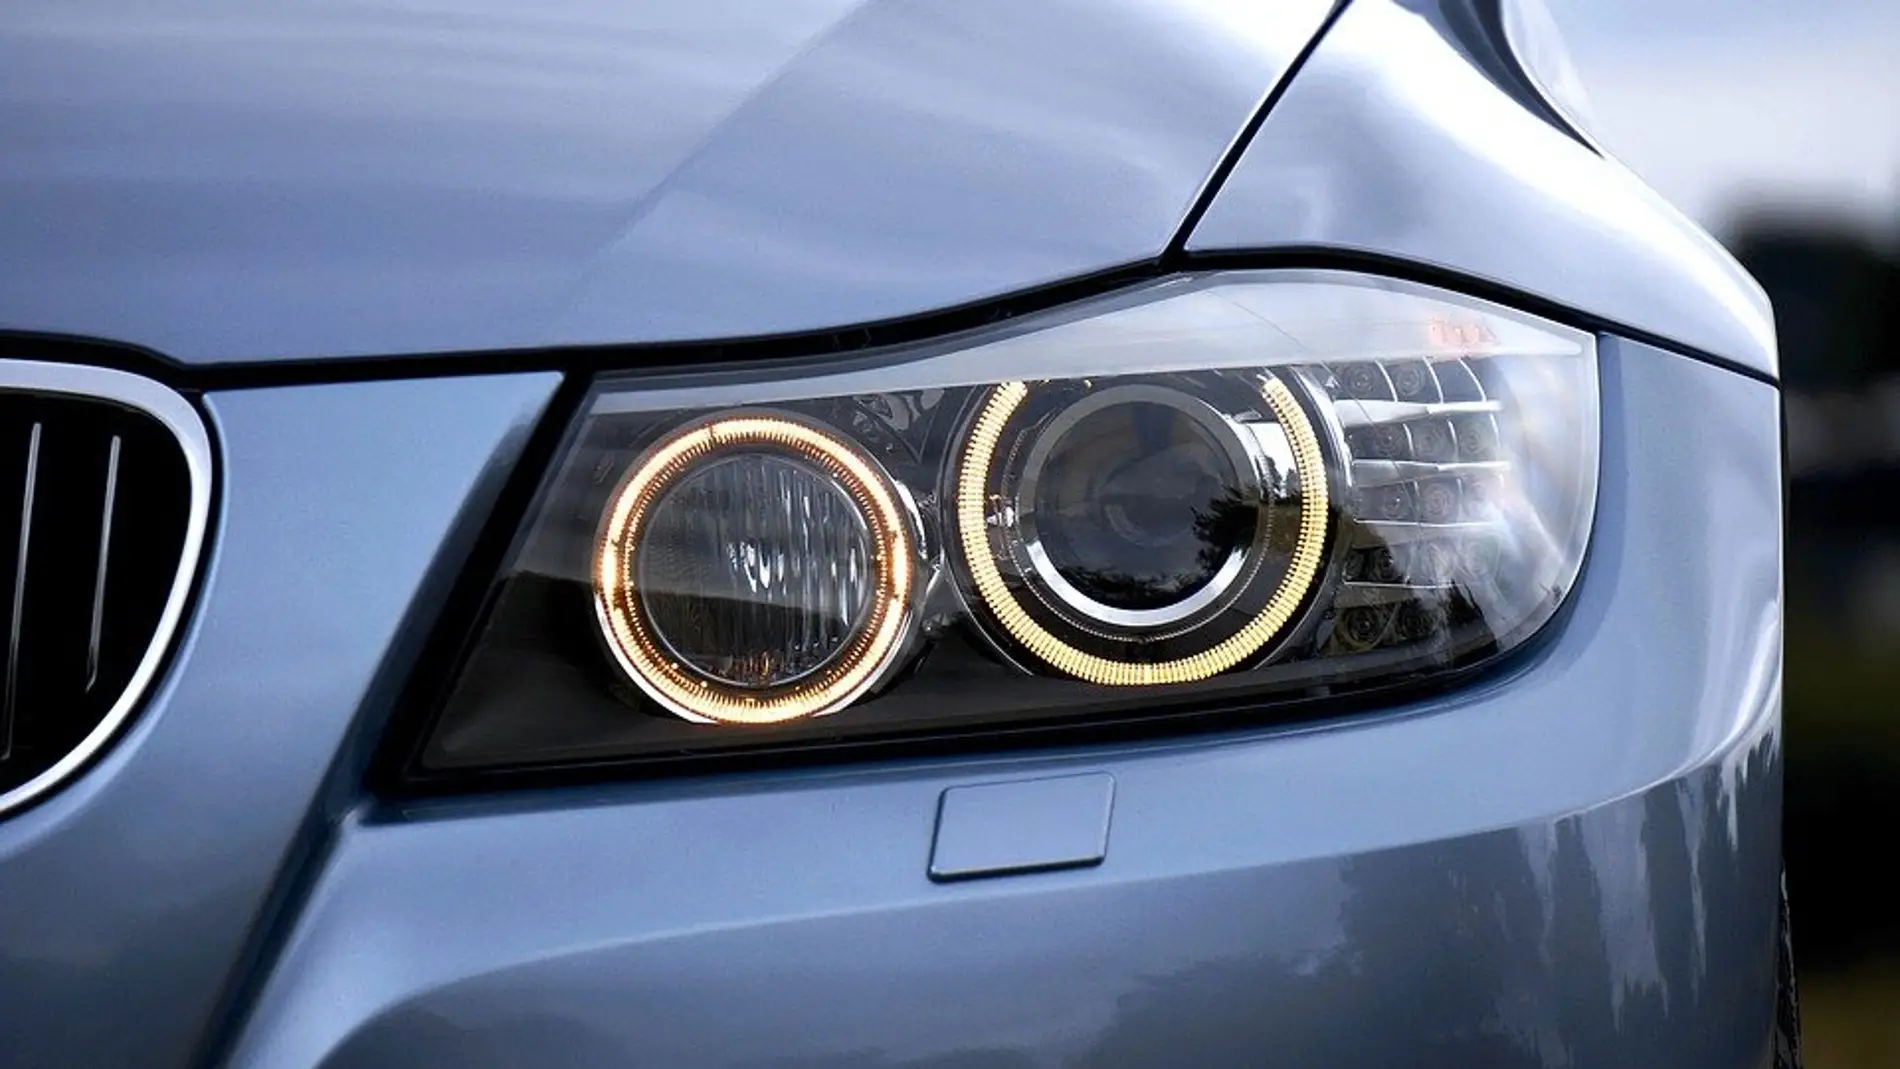 Qué luces del coche son obligatorias para circular durante el día?